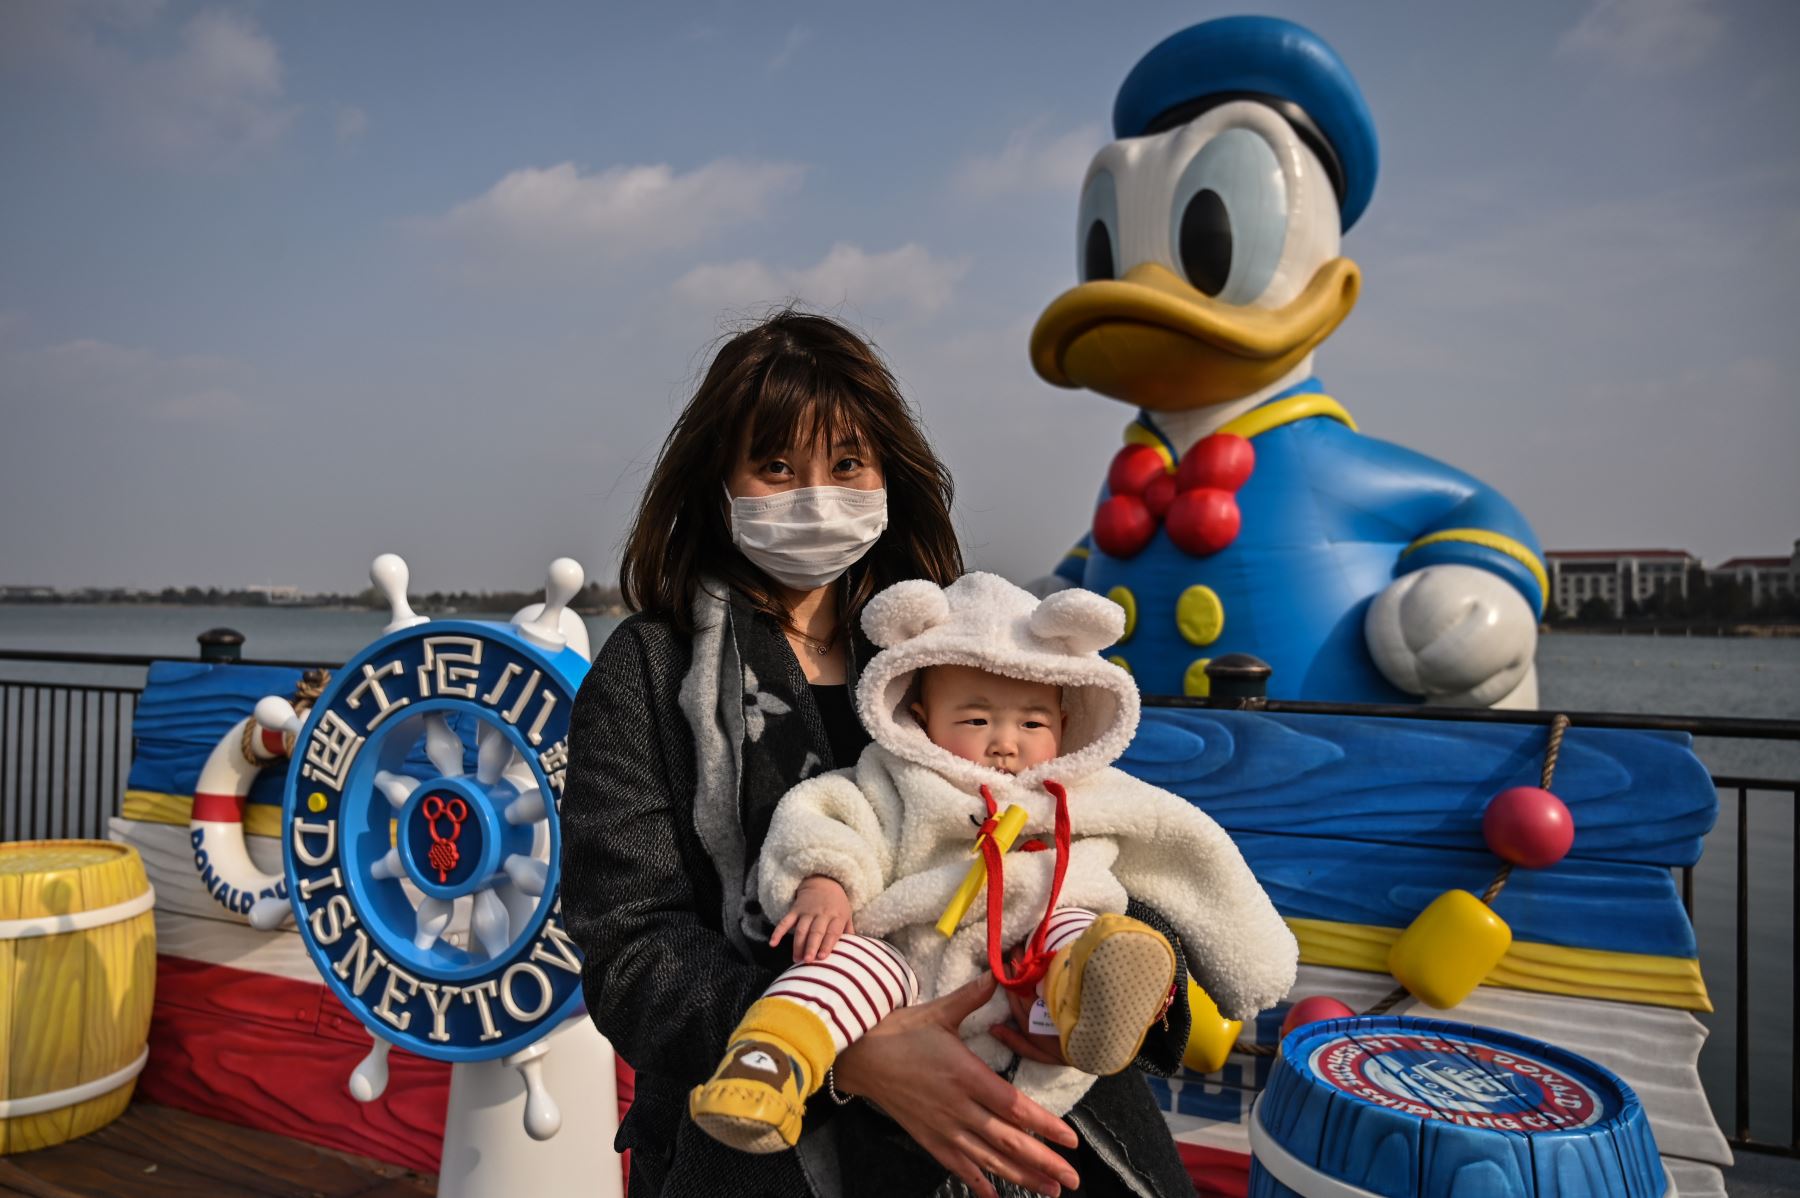 Una mujer que usa una máscara facial como medida preventiva contra el coronavirus COVID-19 sostiene a un niño mientras visita Disneytown en Shanghai. Foto: AFP